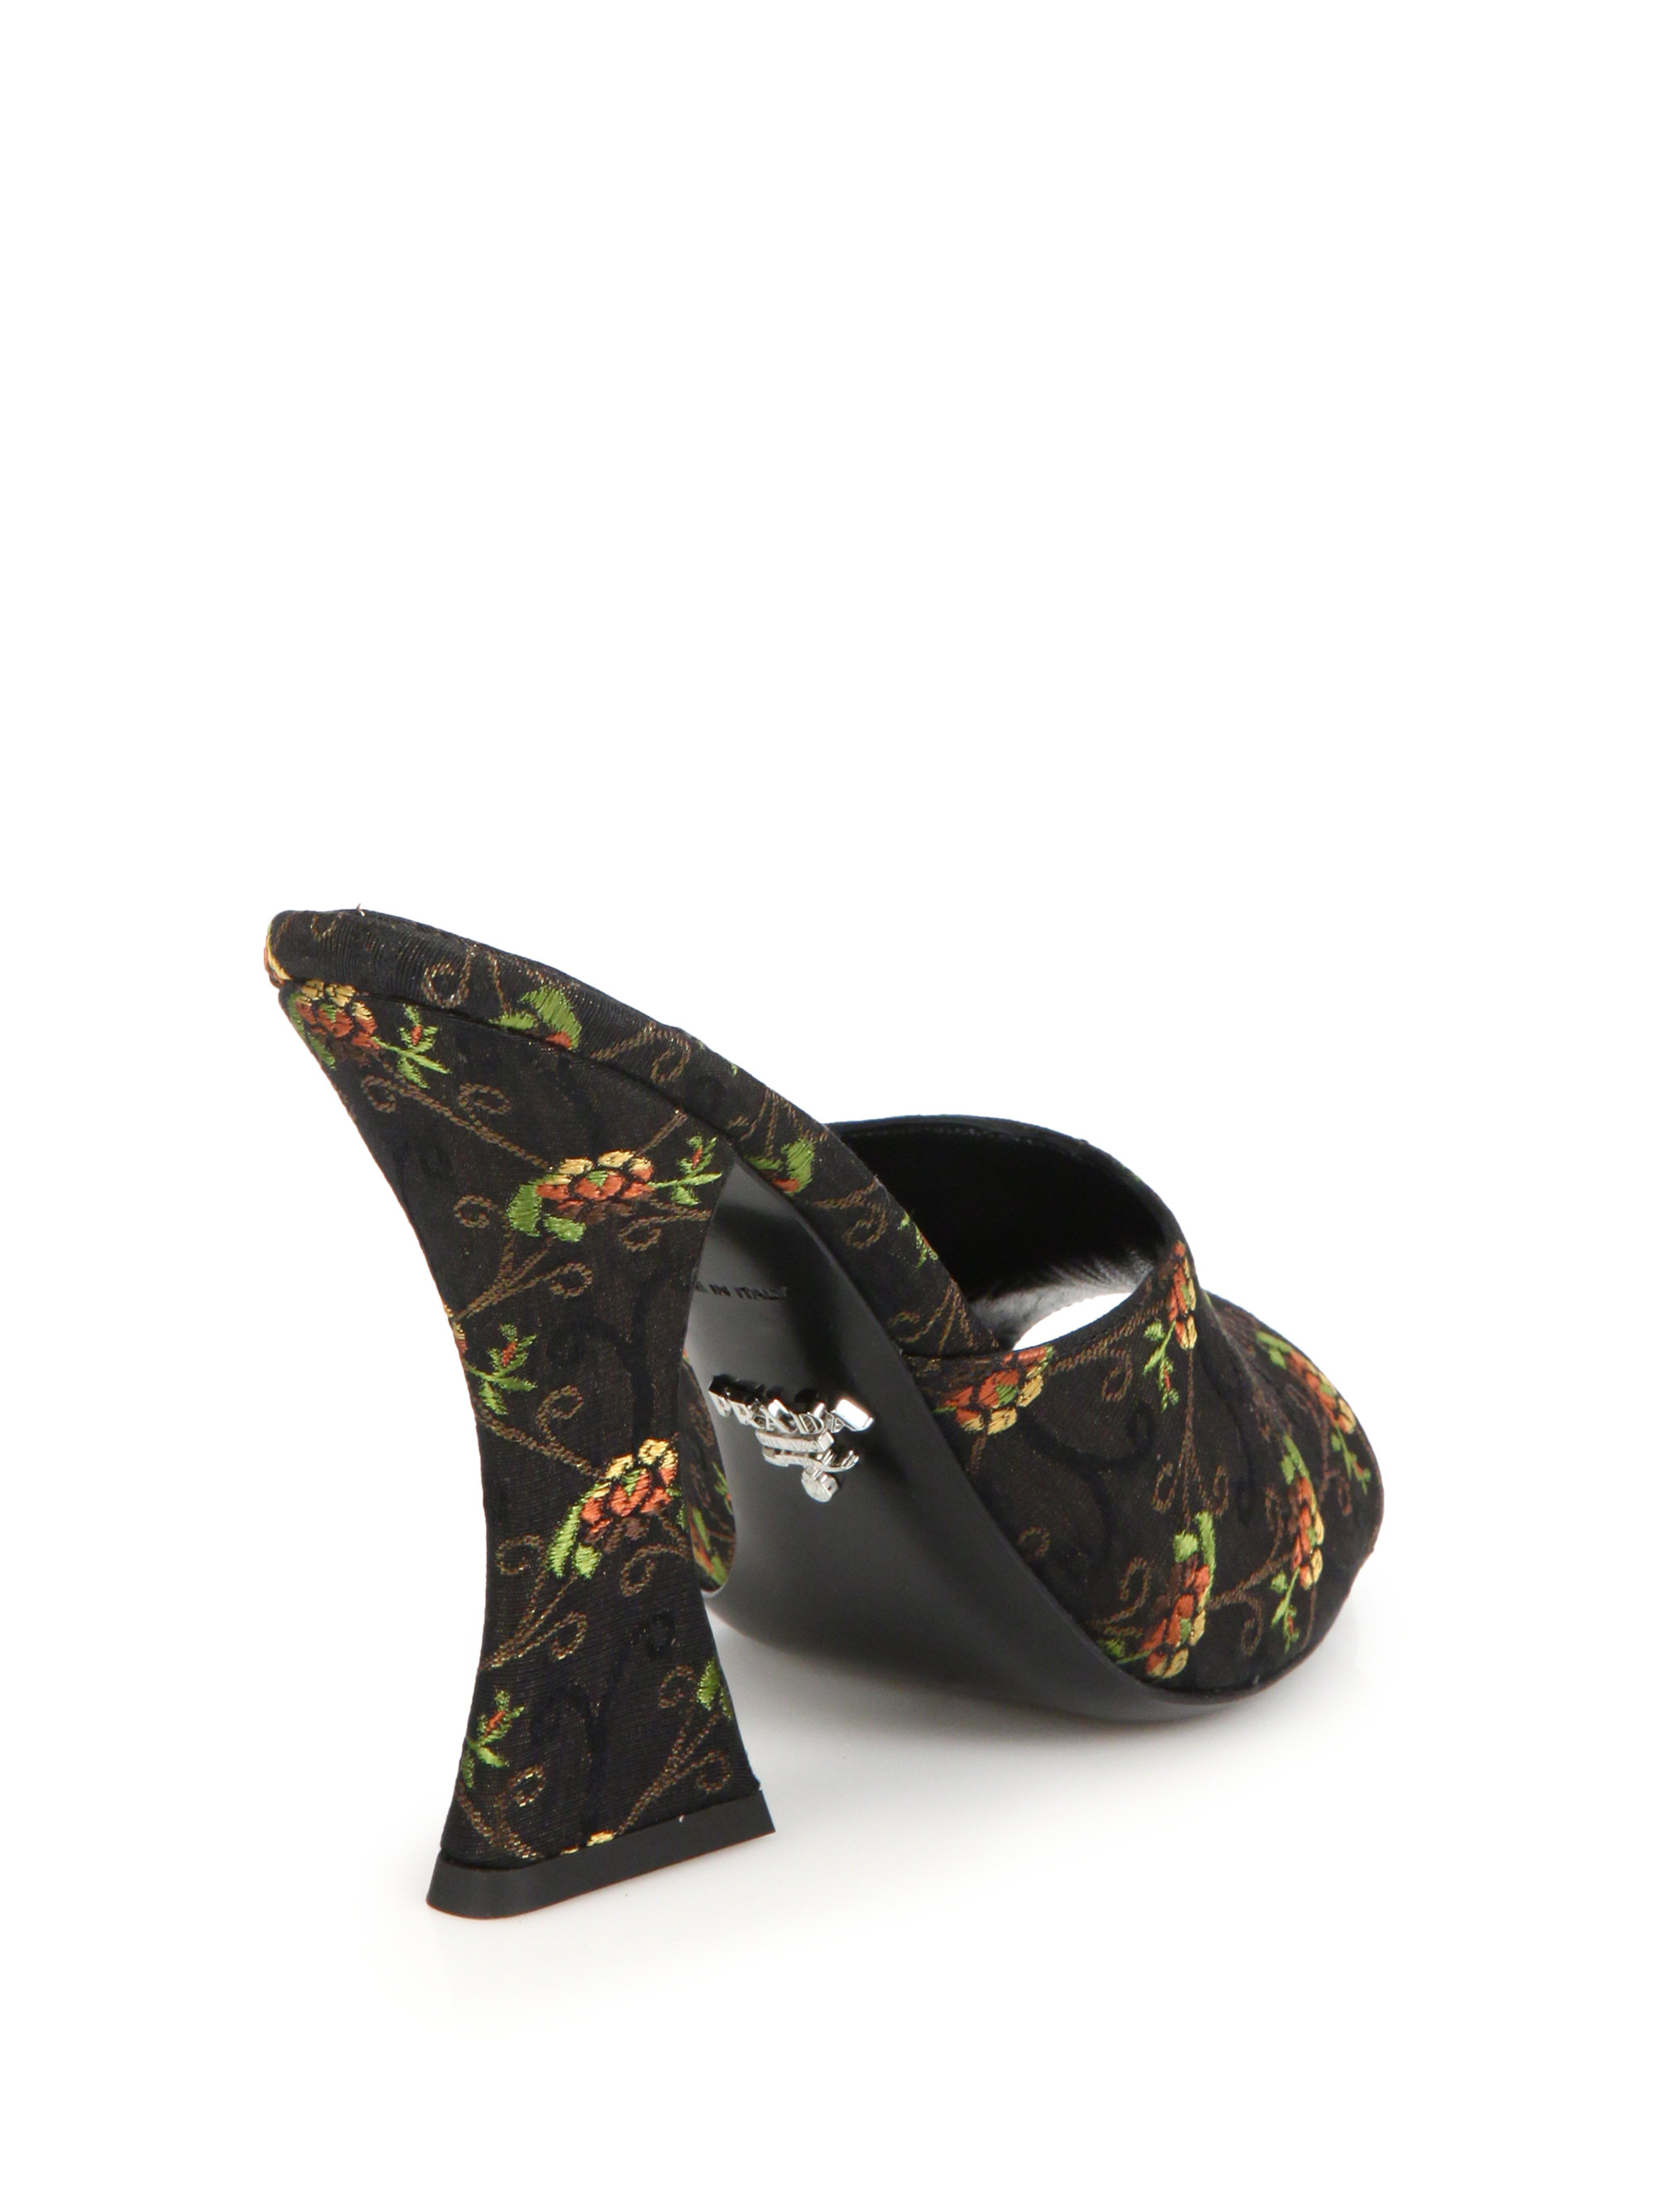 Prada Floral Silk Brocade Mule Sandals in Black | Lyst